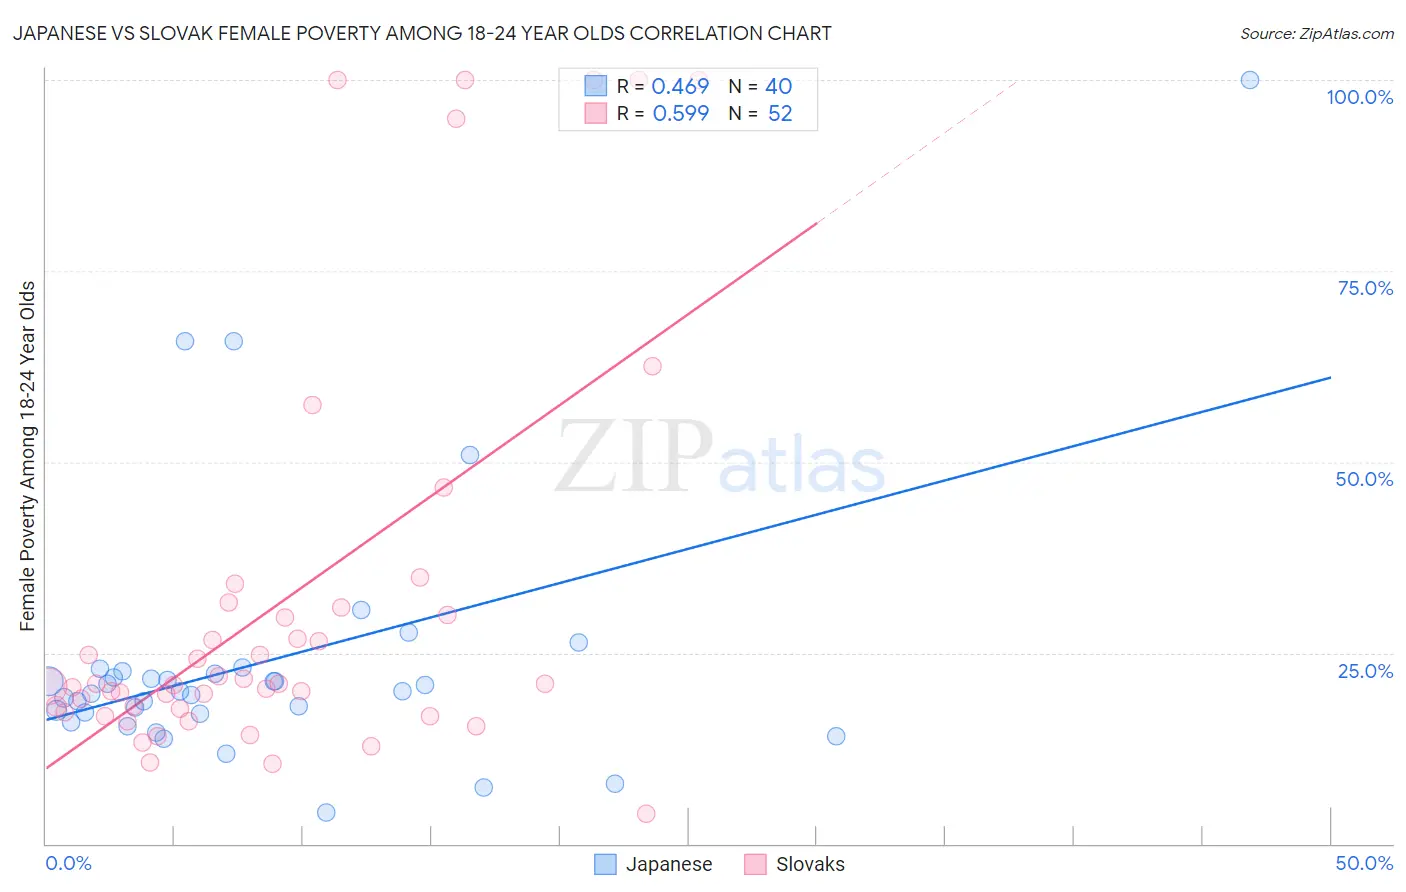 Japanese vs Slovak Female Poverty Among 18-24 Year Olds